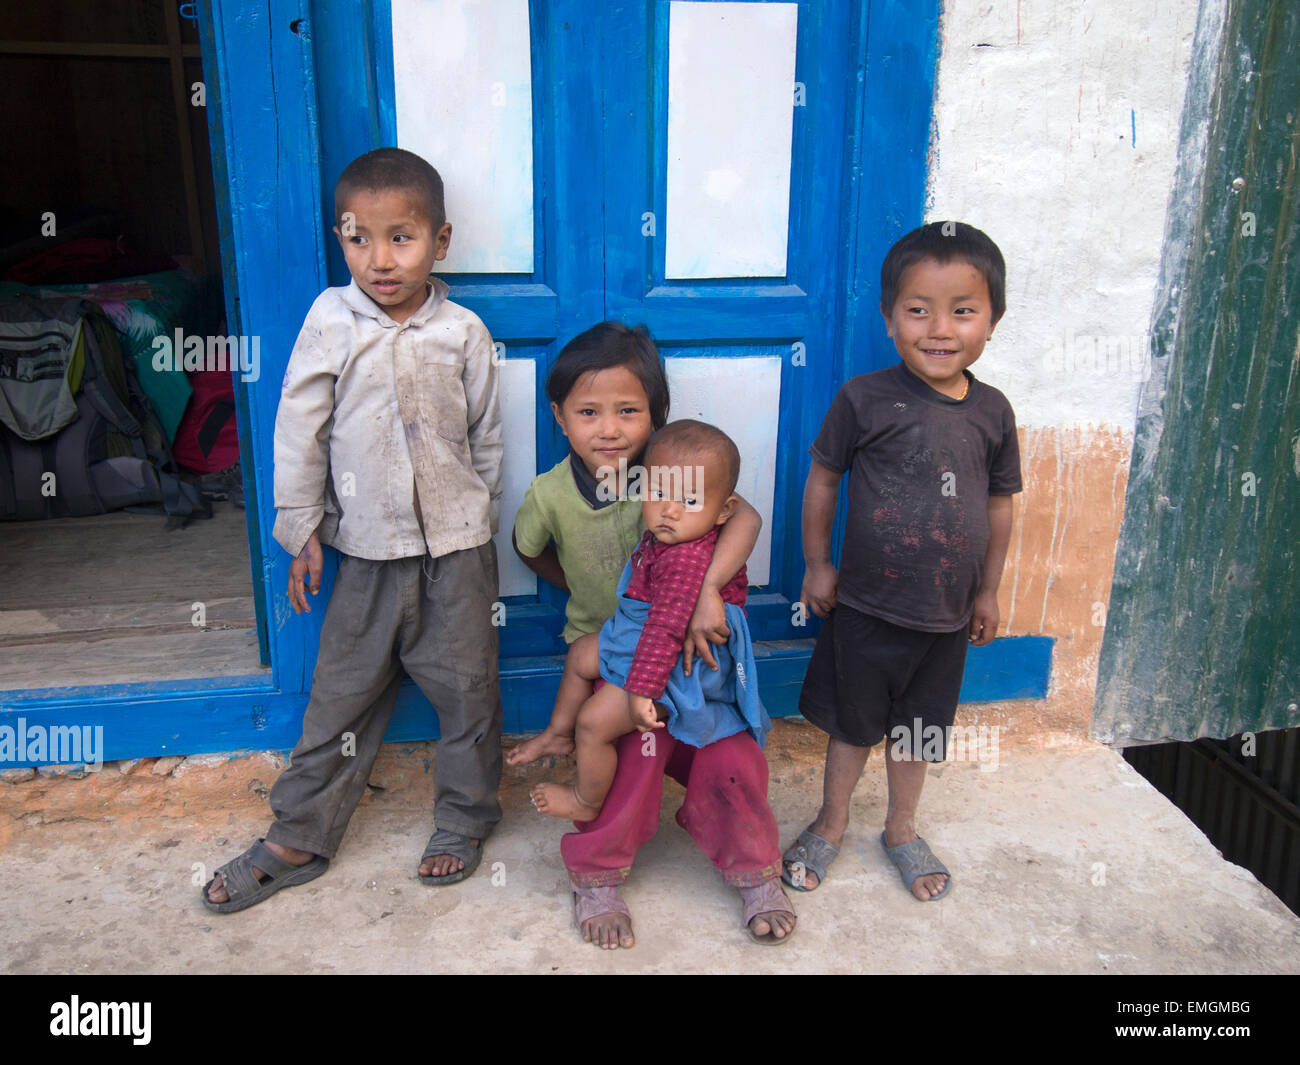 Les jeunes enfants népalais famille Lukla au Népal Asie Banque D'Images